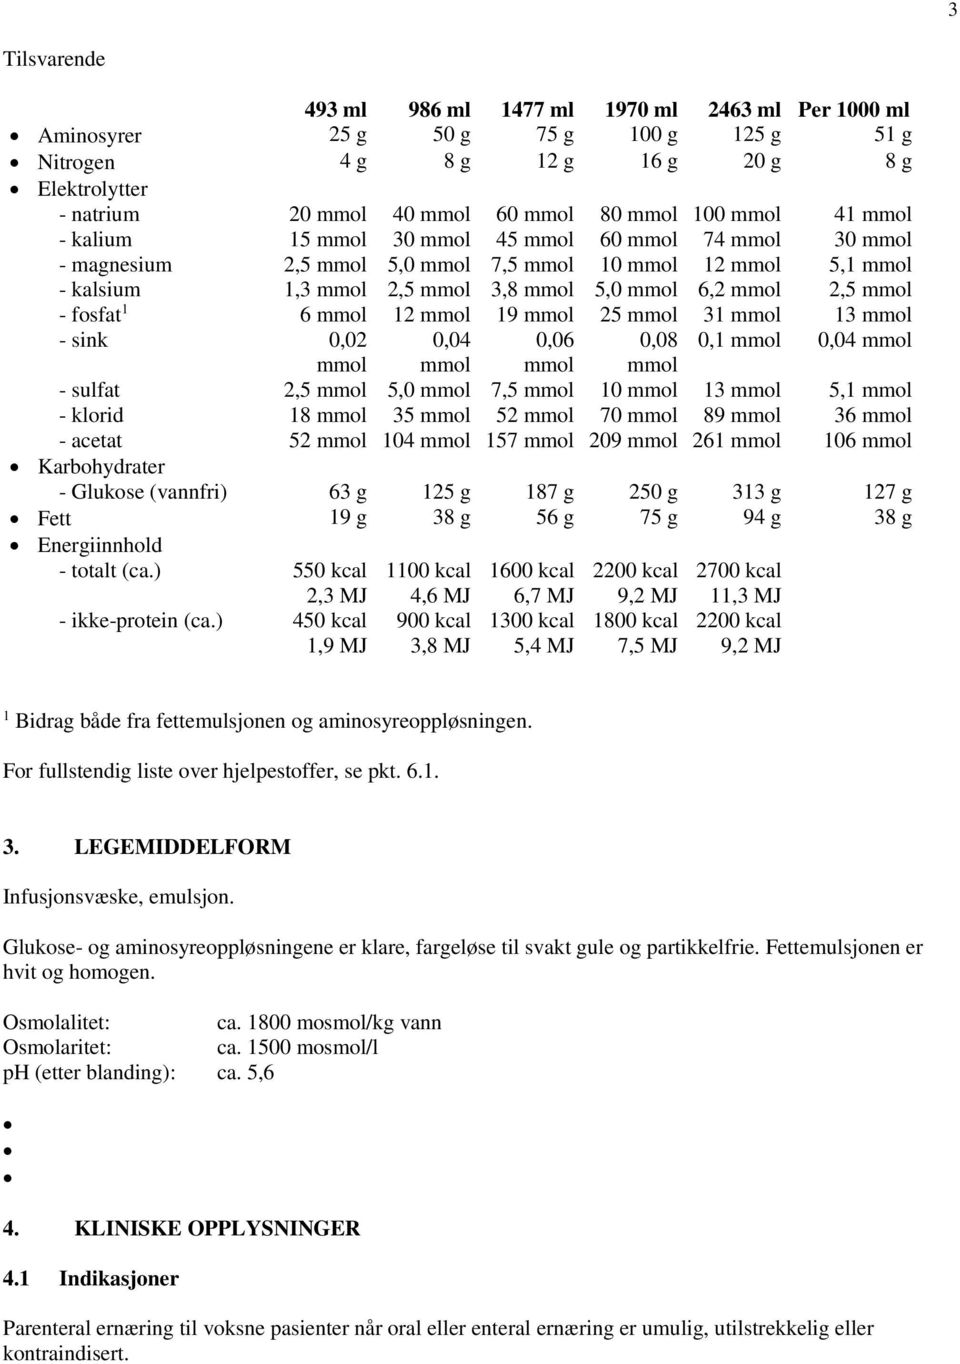 mmol - fosfat 1 6 mmol 12 mmol 19 mmol 25 mmol 31 mmol 13 mmol - sink 0,02 0,04 0,06 0,08 0,1 mmol 0,04 mmol mmol mmol mmol mmol - sulfat 2,5 mmol 5,0 mmol 7,5 mmol 10 mmol 13 mmol 5,1 mmol - klorid